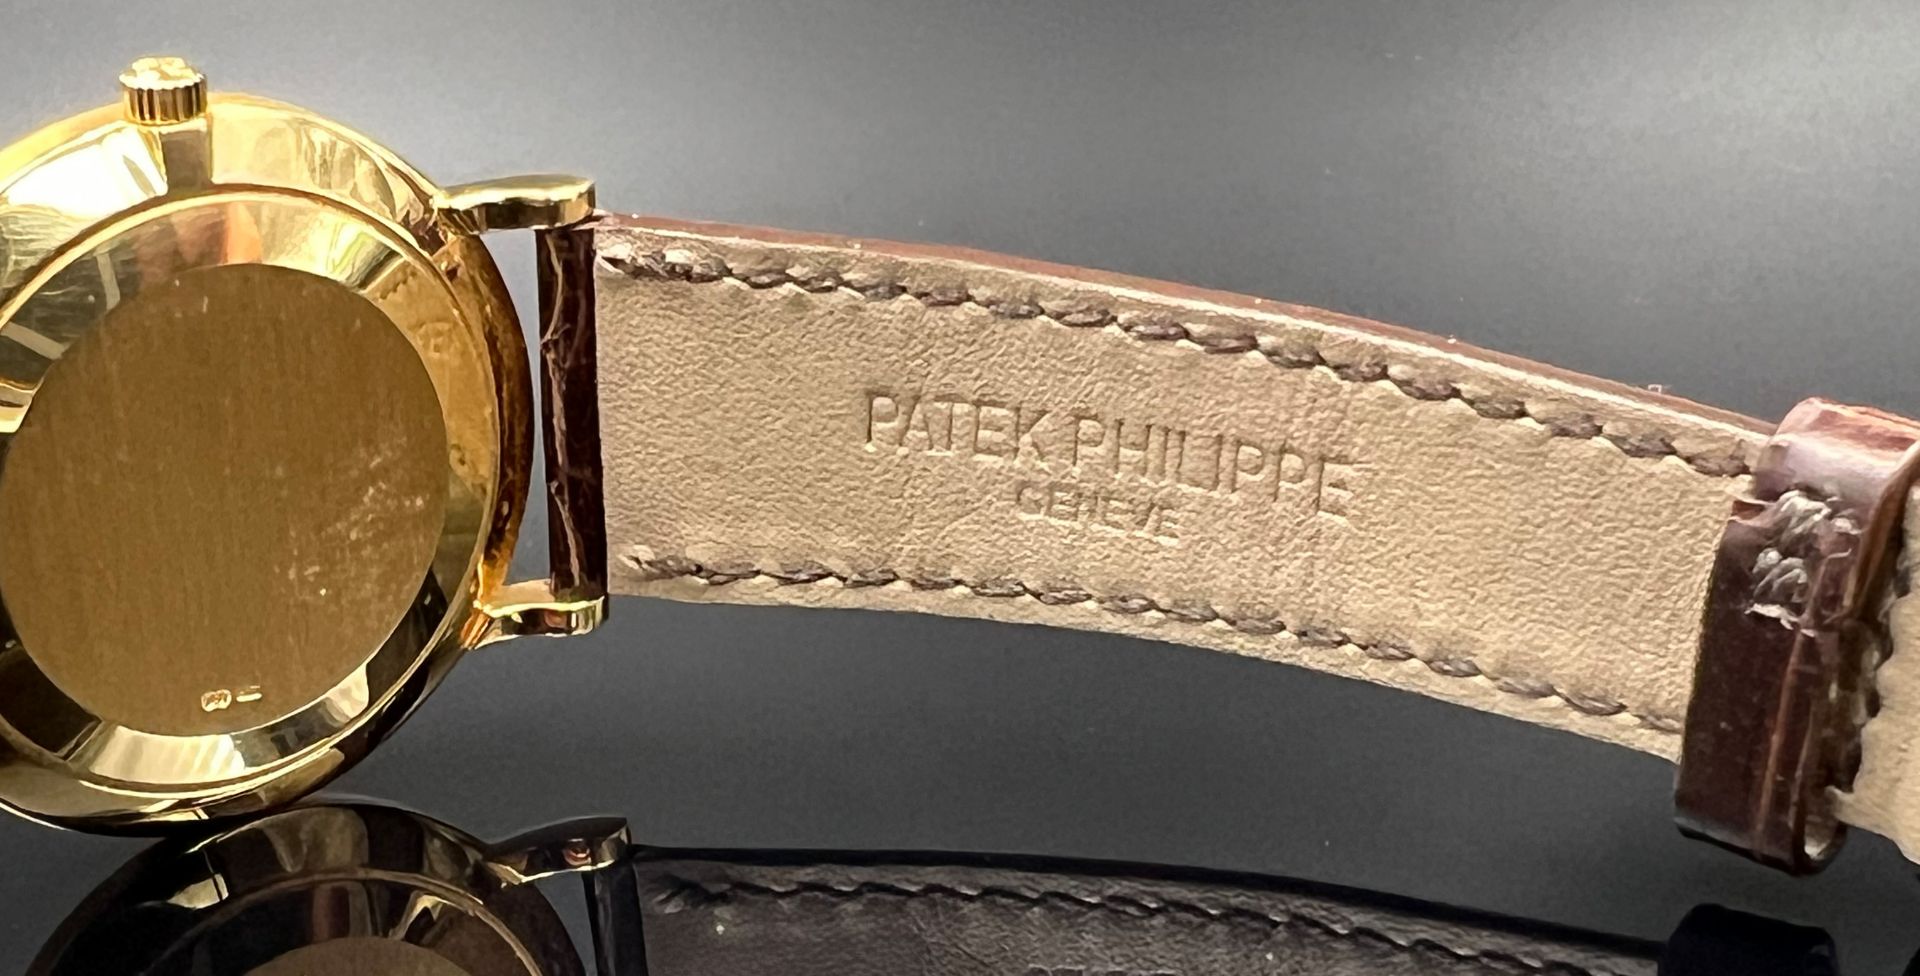 PATEK PHILIPPE Calatrava Clous de Paris wristwatch wristwatch for men. 750 yellow gold. Ref. 3919. - Image 10 of 12